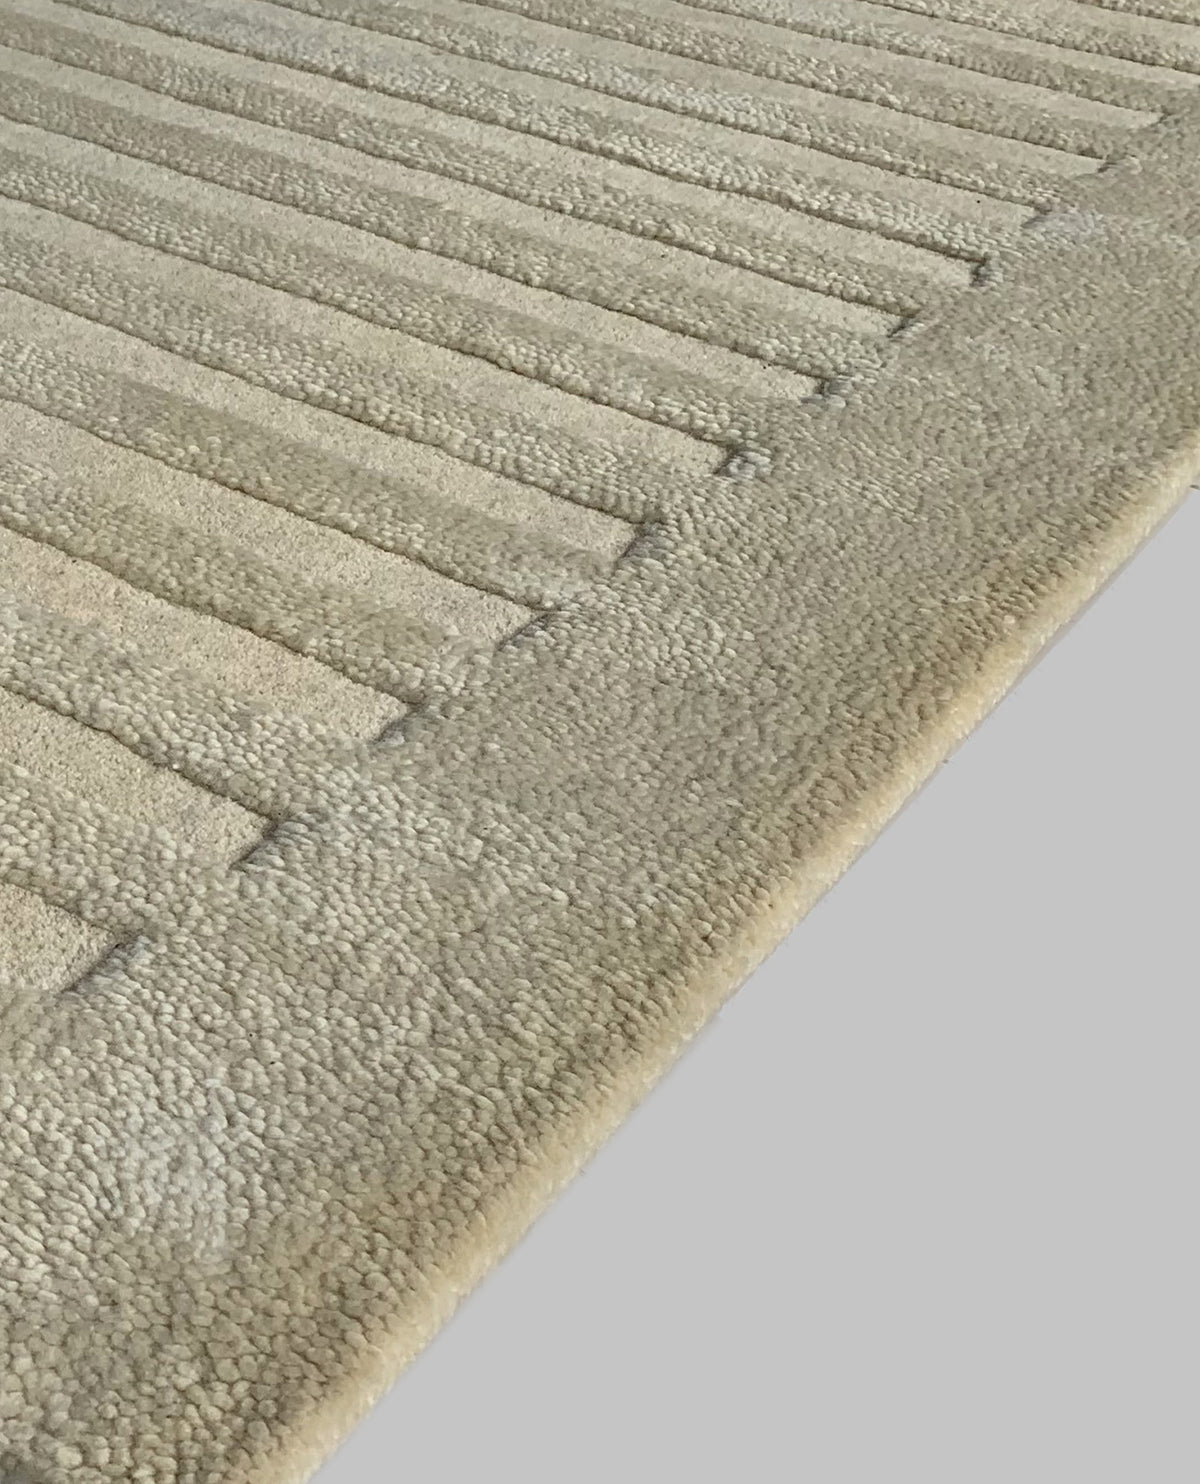 Rugslane White Color Modern Design 100% New Zealand Wool Handmade Carpet 4.6ft x 6.6ft